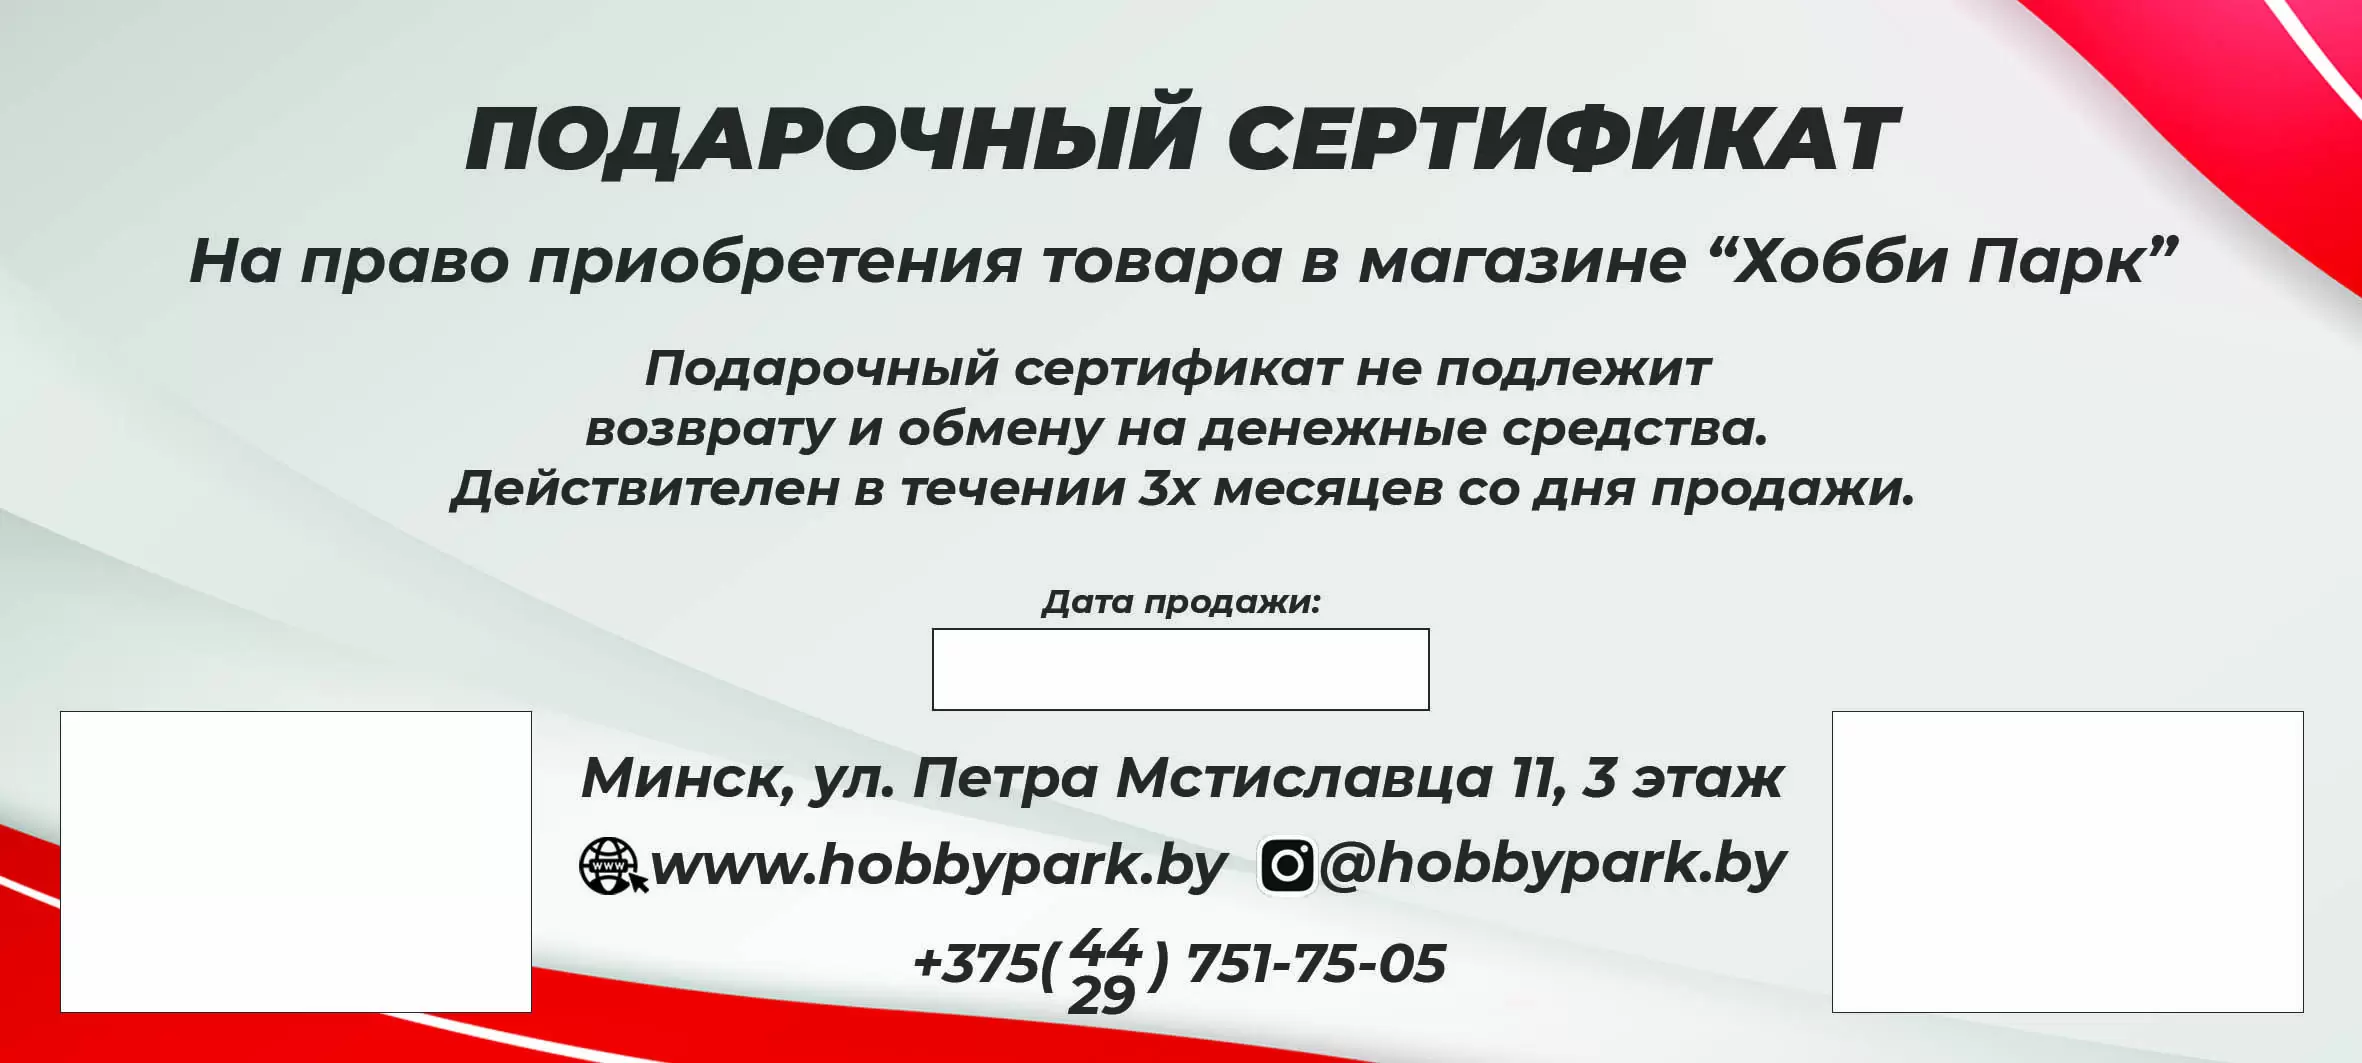 Подарочный сертификат Хобби-Парк на 50 рублей